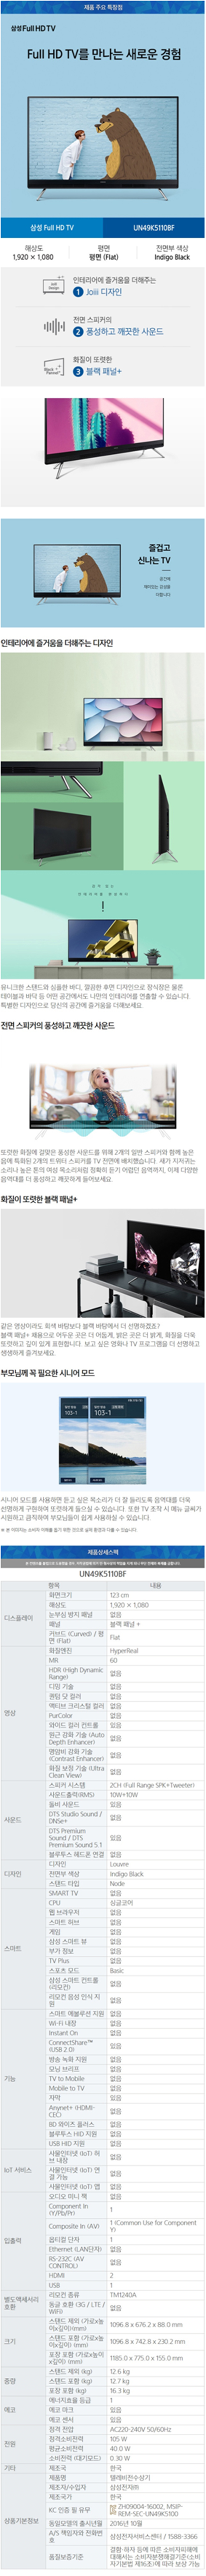 광진케이블 - 삼성 49인치 LED TV (UN49K5110BF) 상세보기